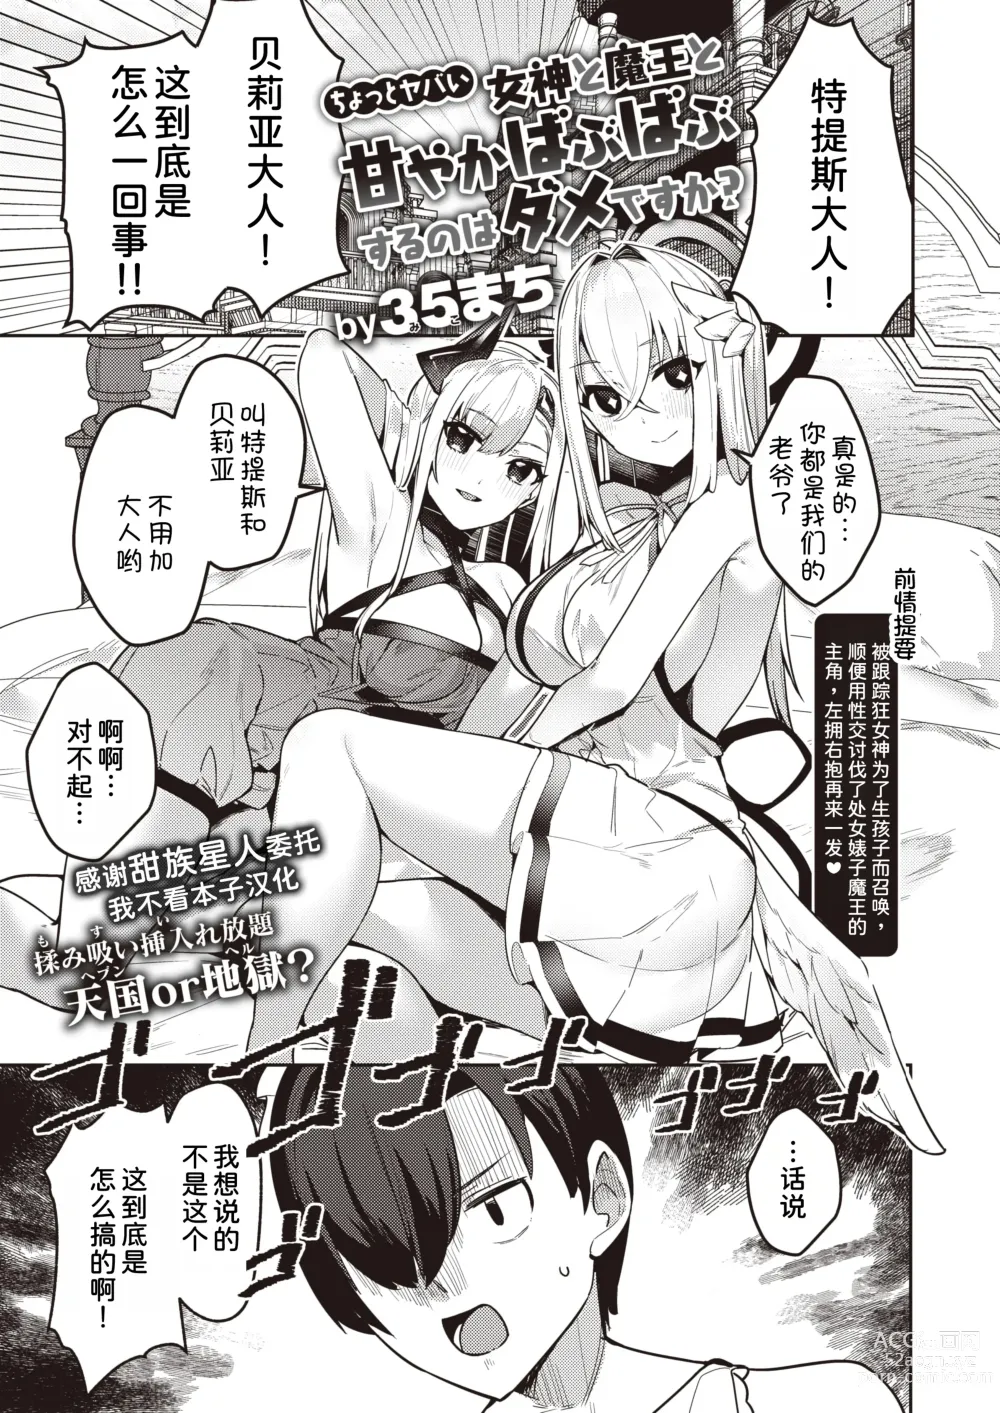 Page 1 of manga Chotto Yabai Megami to Maou to Amayakababubabu Suru no wa Dame desu ka?